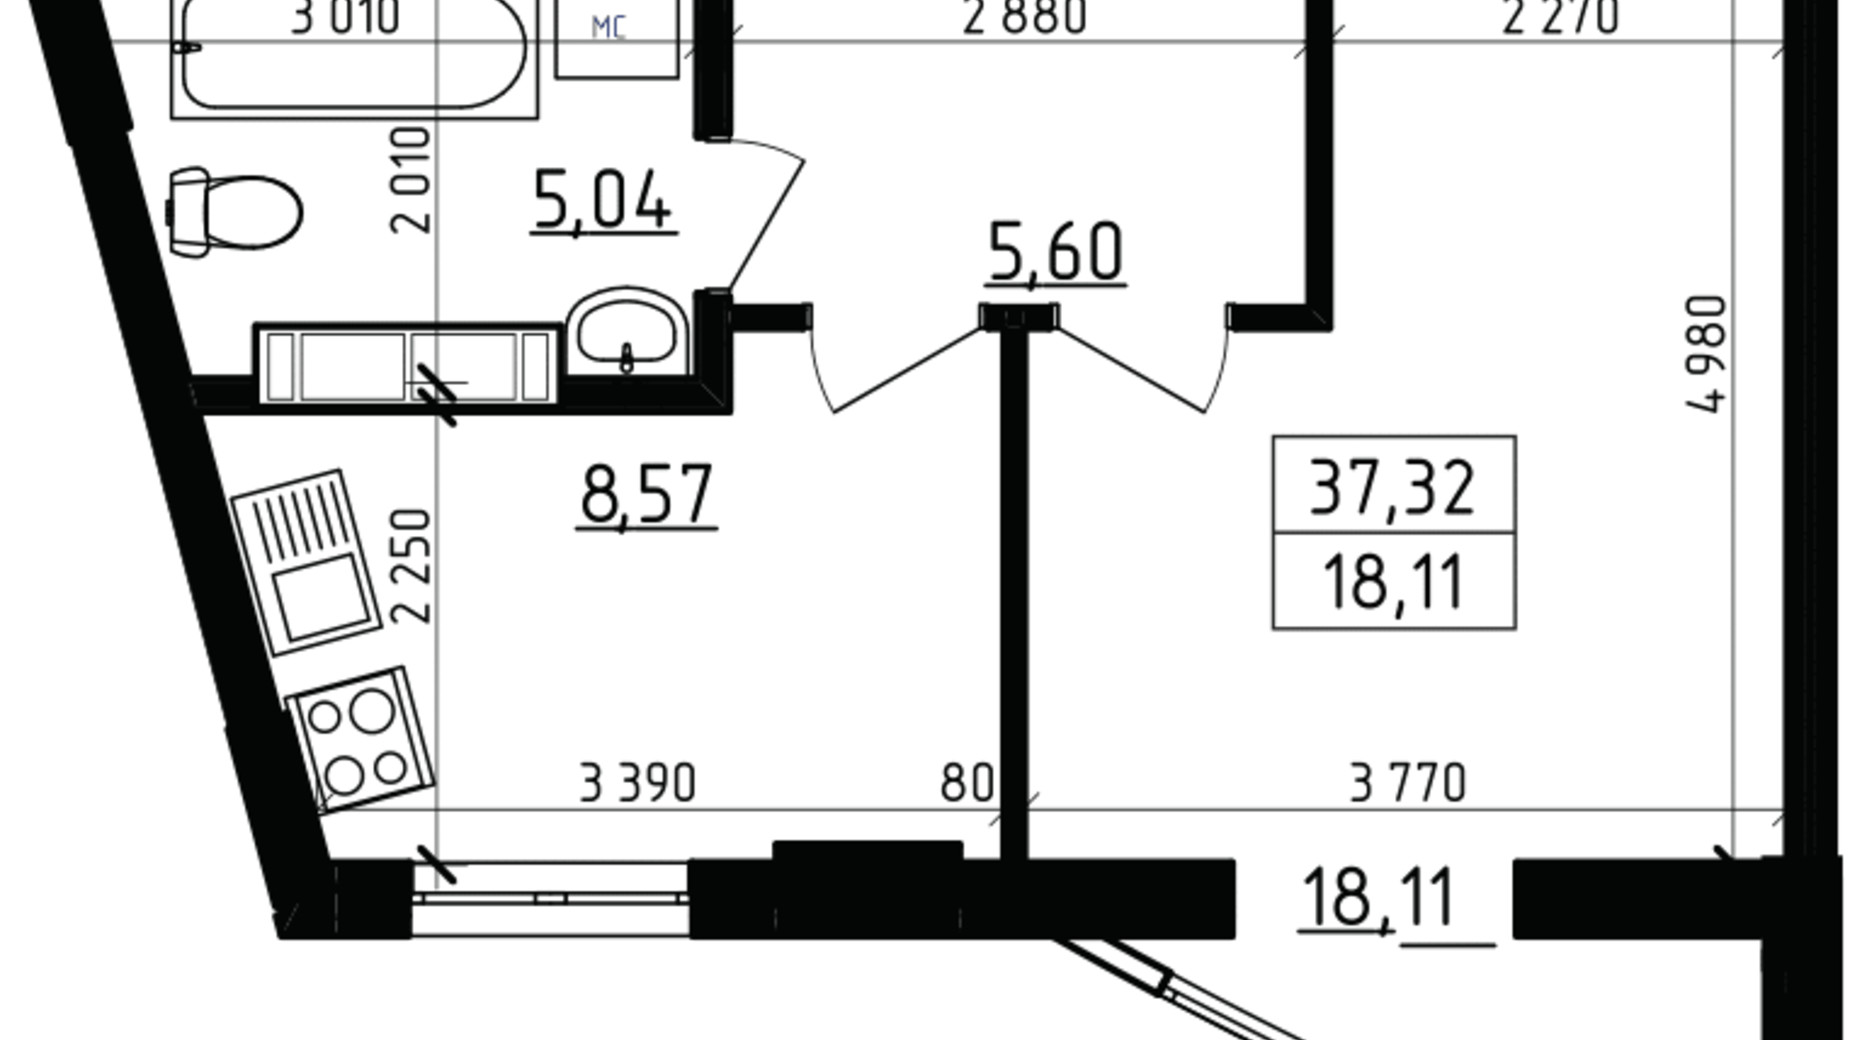 Планировка 1-комнатной квартиры в ЖК Вернисаж 37.32 м², фото 255935